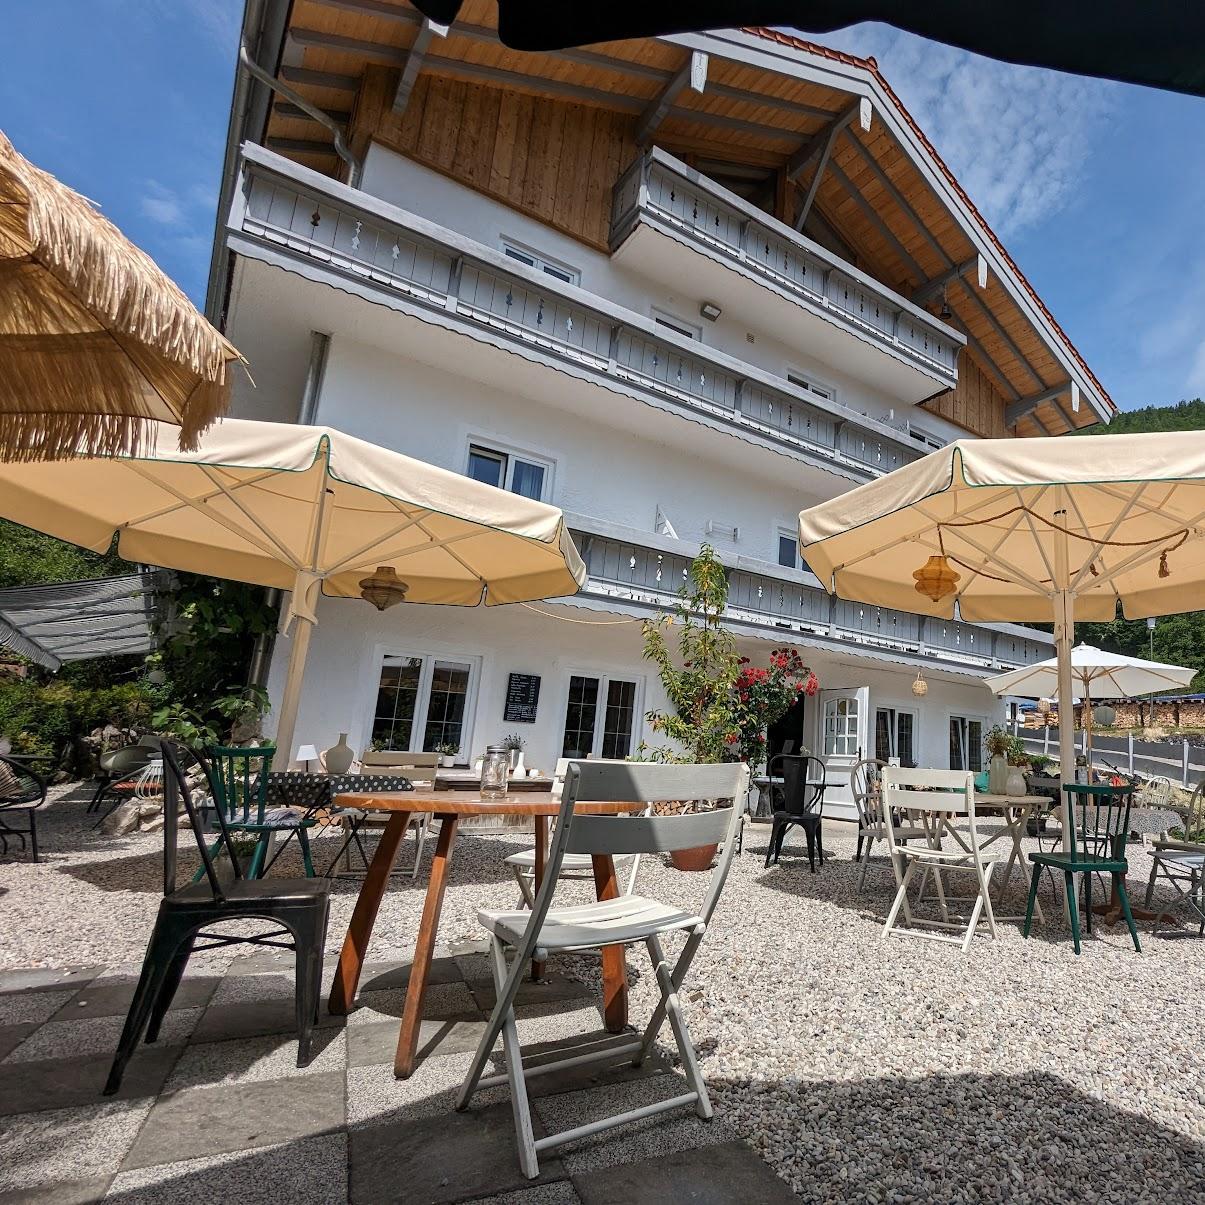 Restaurant "WuhrsteinCafe" in Schleching